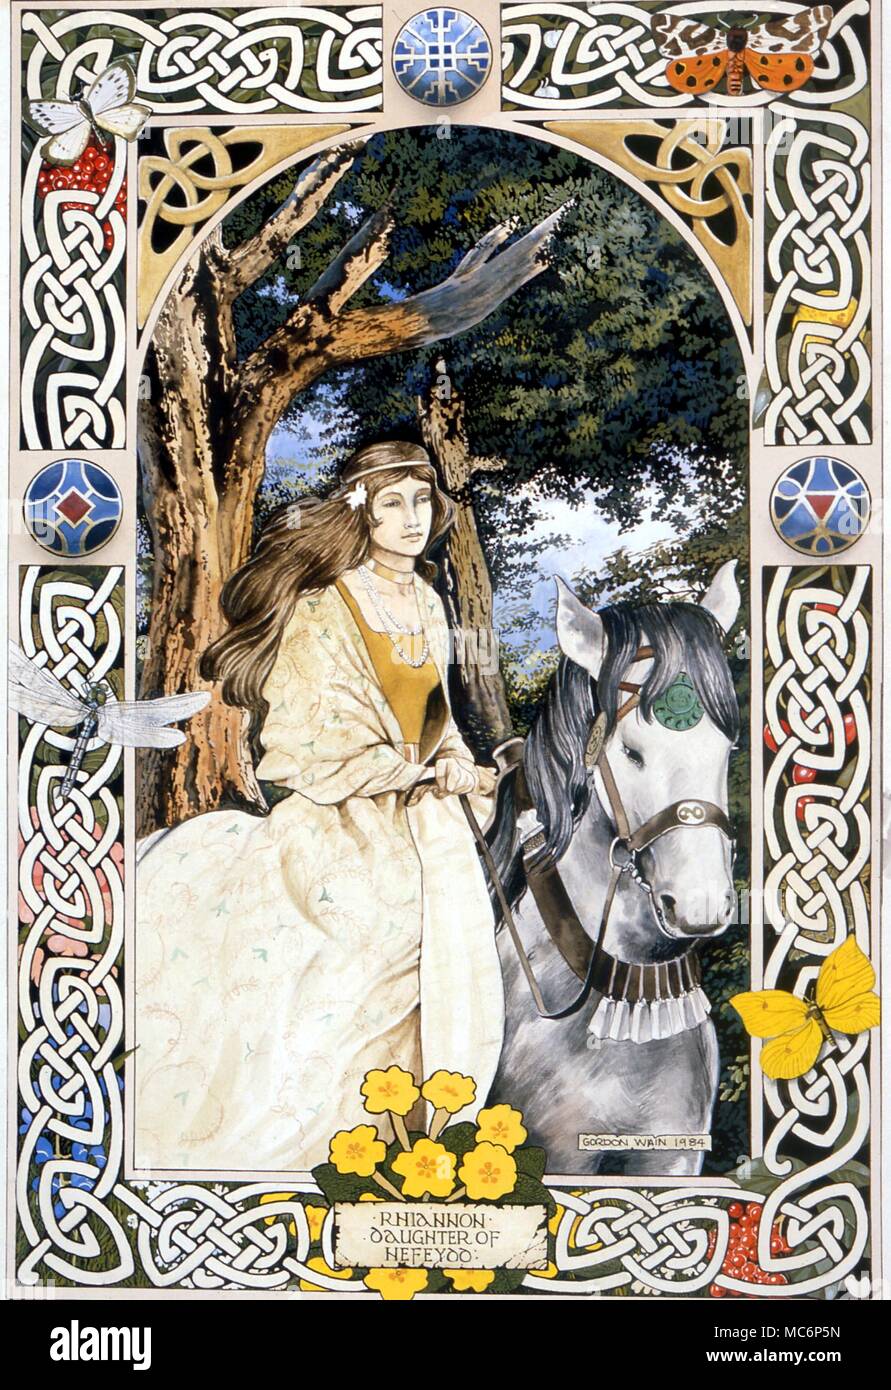 La mitologia celtica. Pittura da Gordon Wain 'Rhiannon, figlia di Hefeydd' 1984 mitologia celtica: Rhiannon figlia di Heffeyd da Gordon Wain Foto Stock